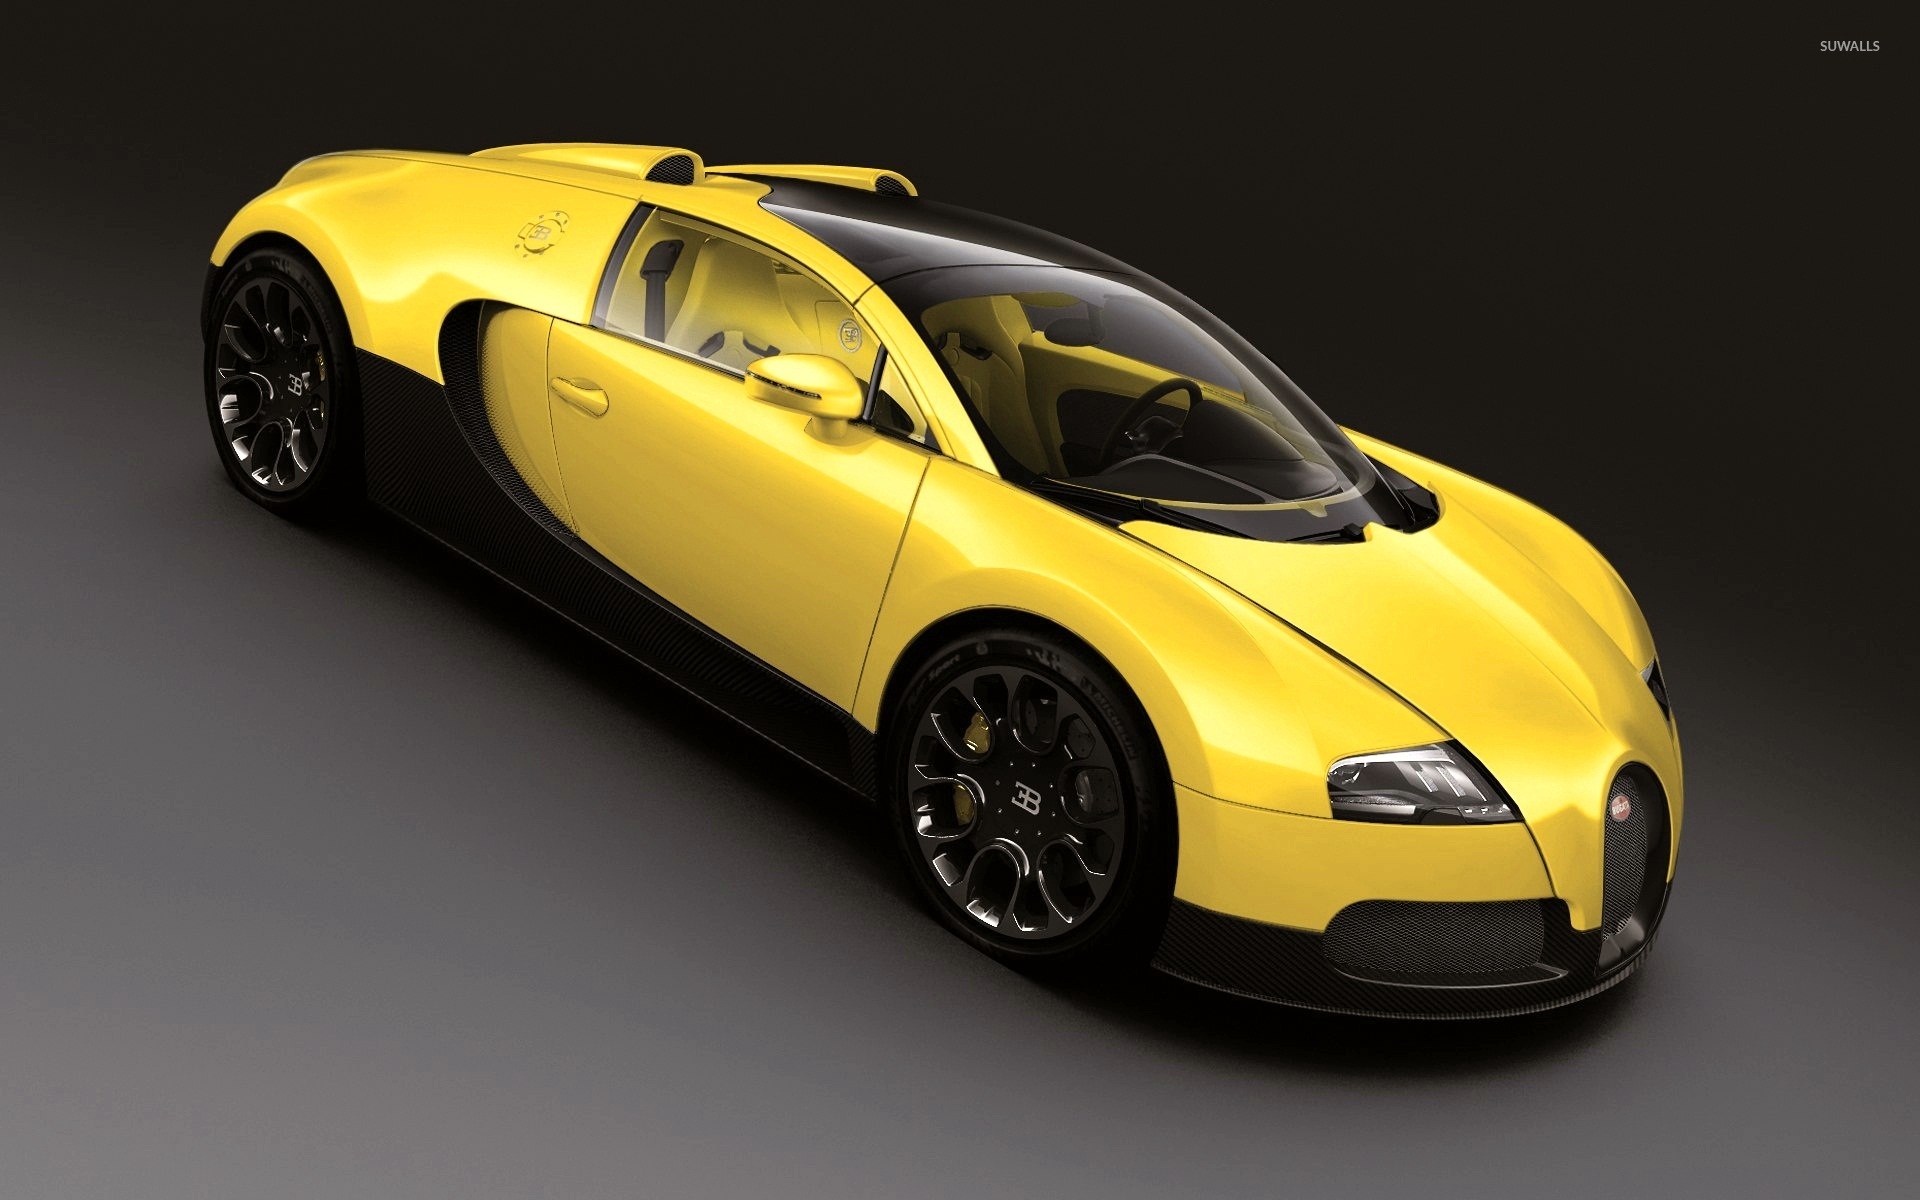 Yellow Bugatti Veyron top view wallpaper   Car wallpapers   54518 1920x1200